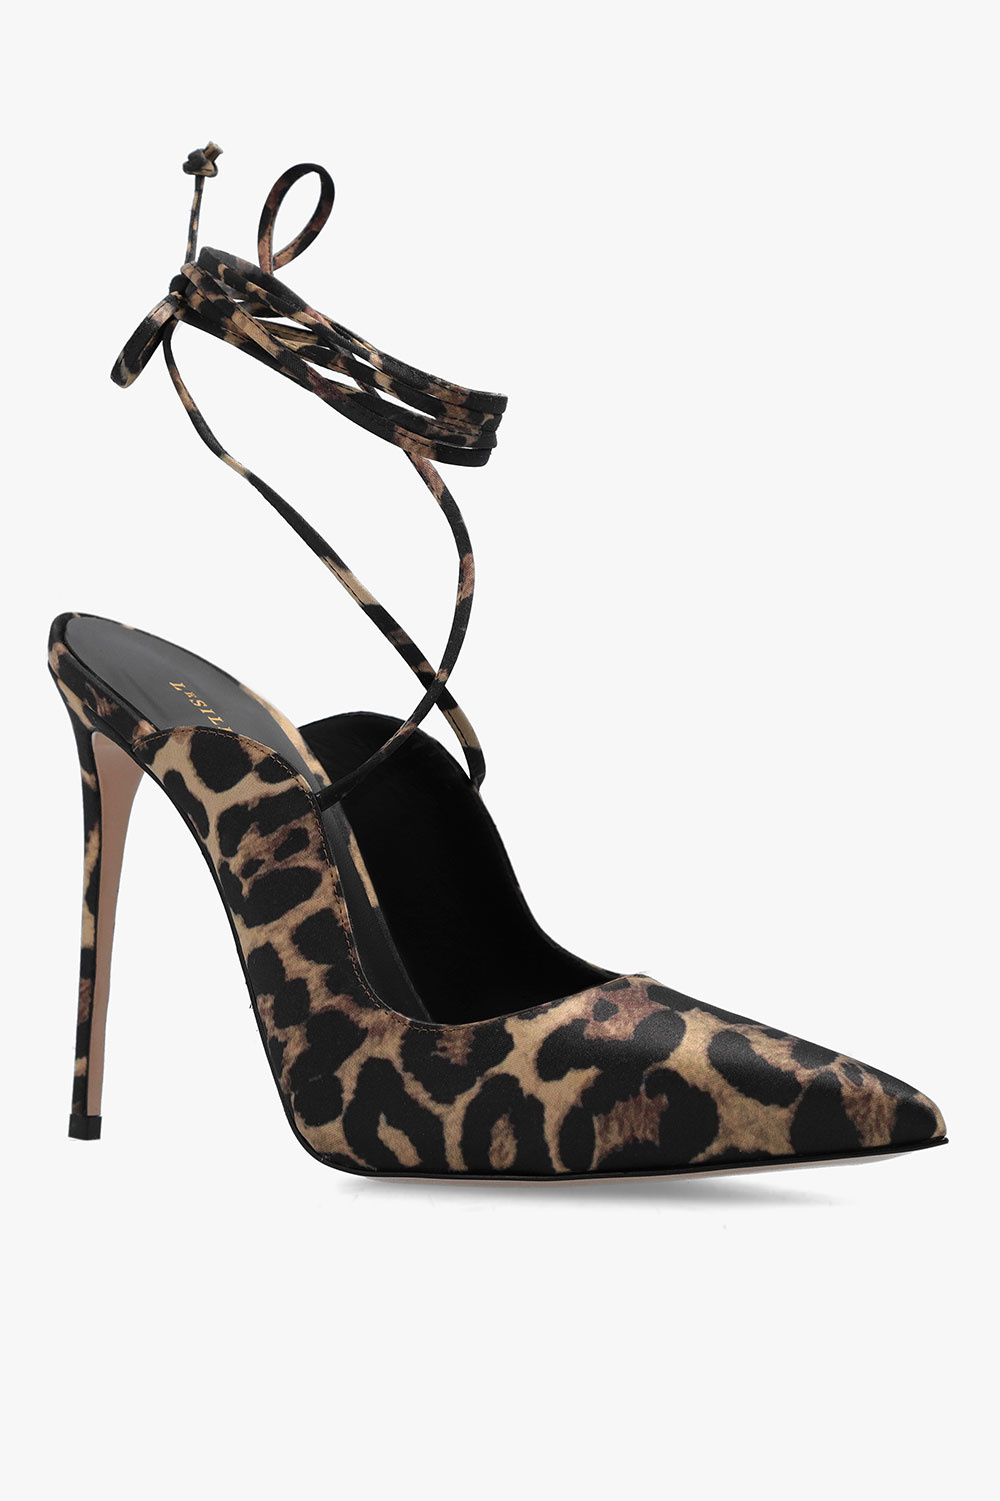 Le Silla 'Chanel Ivy' pumps, Women's Shoes